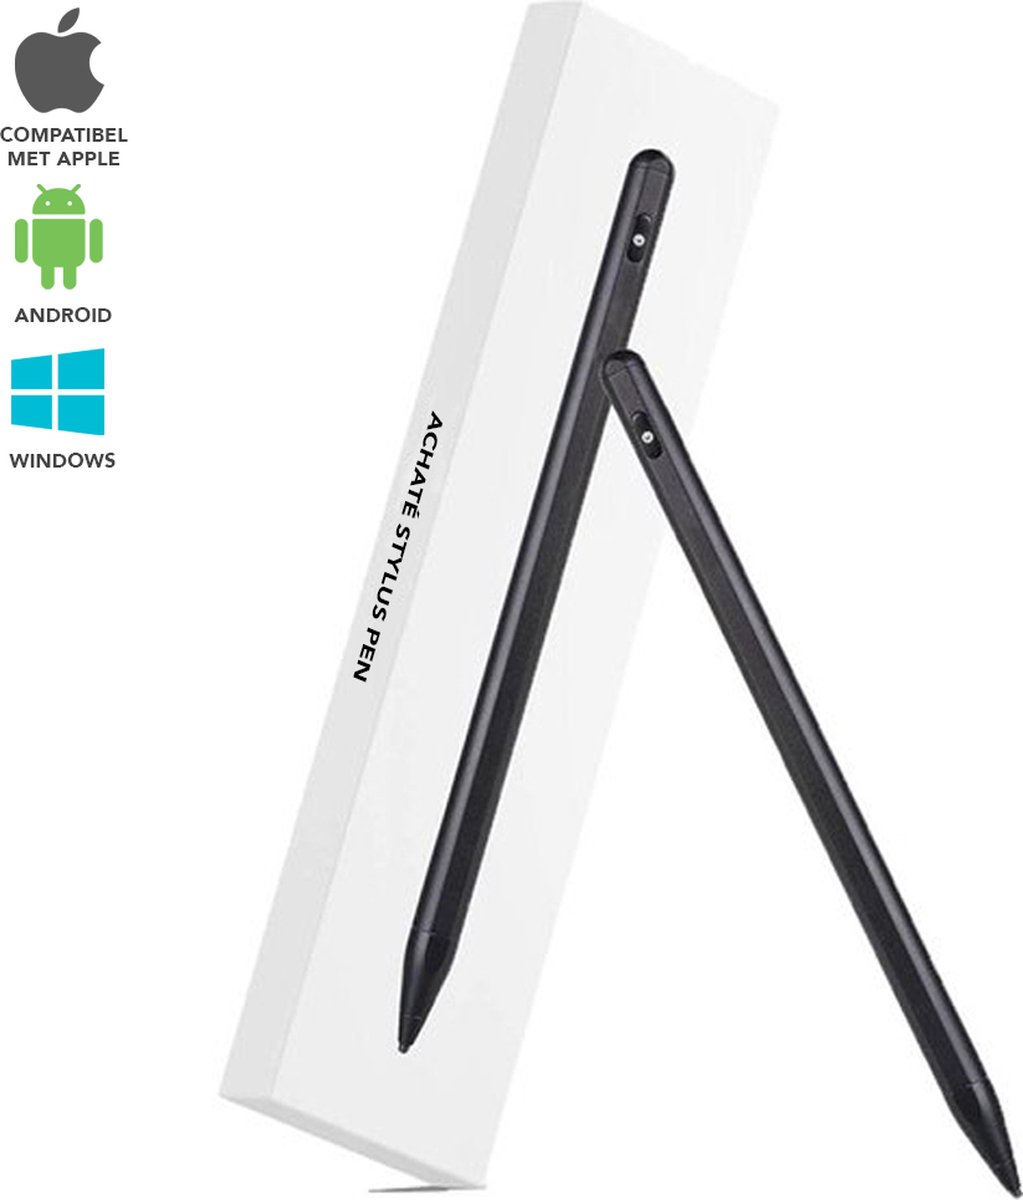 Achaté Stylus Pen voor Tablet iPad of Smartphone - Zonder Bluetooth - Tot 12 Uur Werktijd - 2 Extra Punten - Zwart